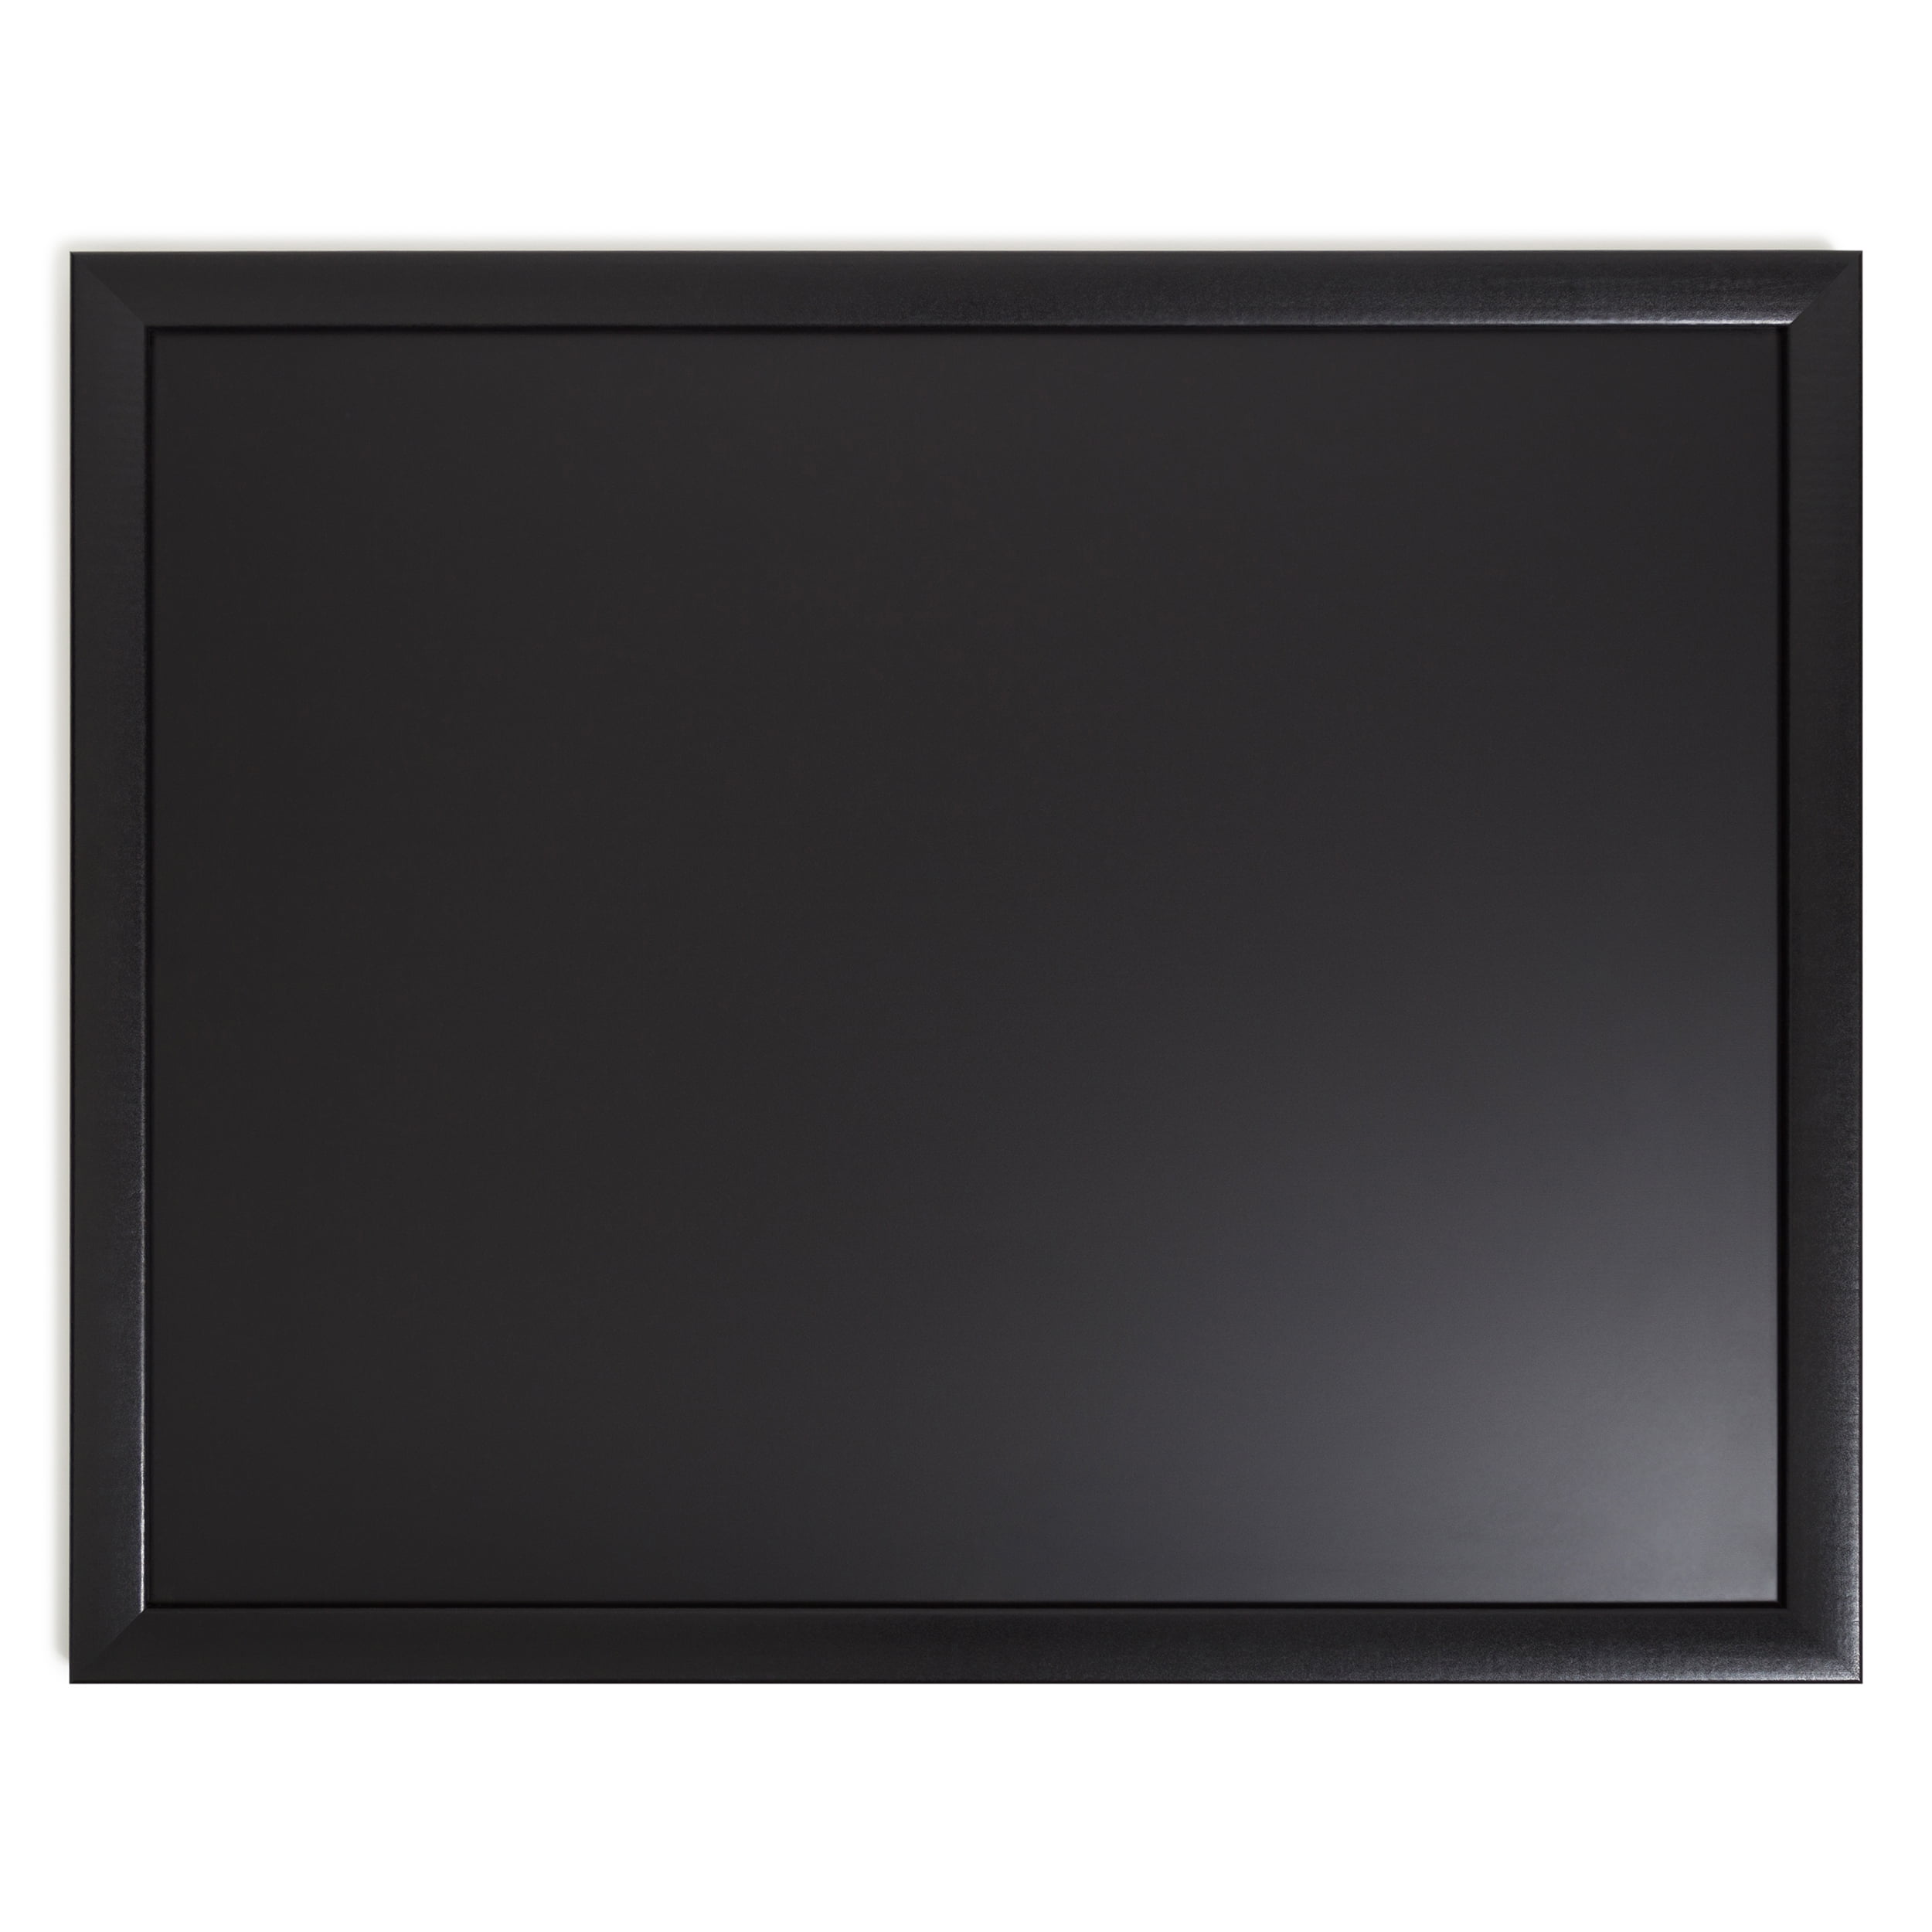 U Brands Black Magnetic Chalkboard, 16" x 20" Black Wood Frame,